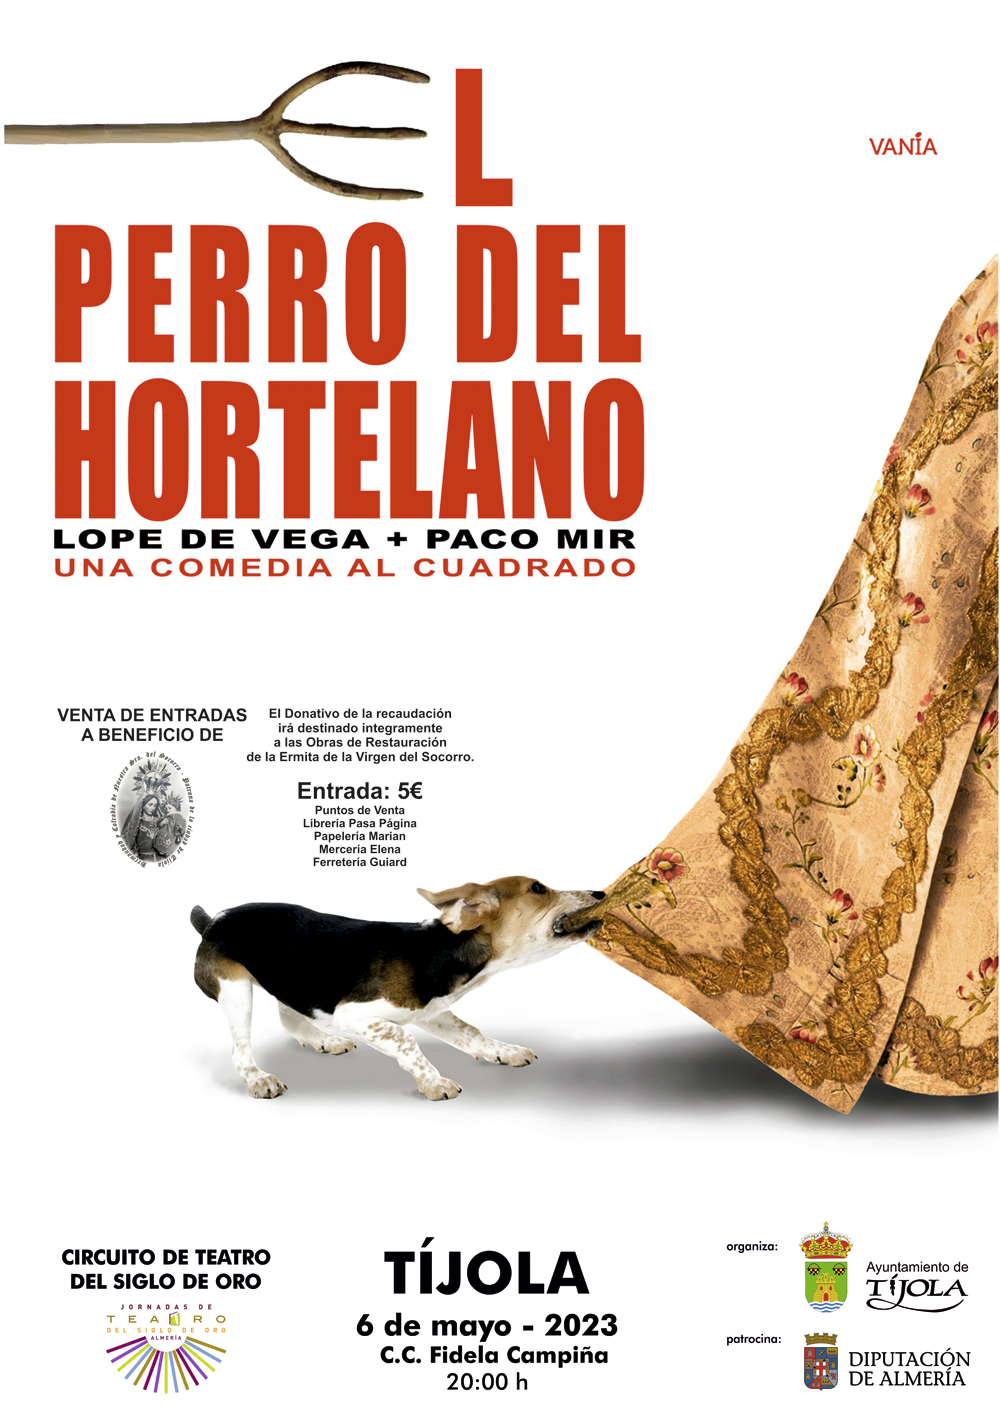 Imagen del Cartel con imagen de un perro que ha mordido un vestido y tira de el al fondo e información de la actividad.